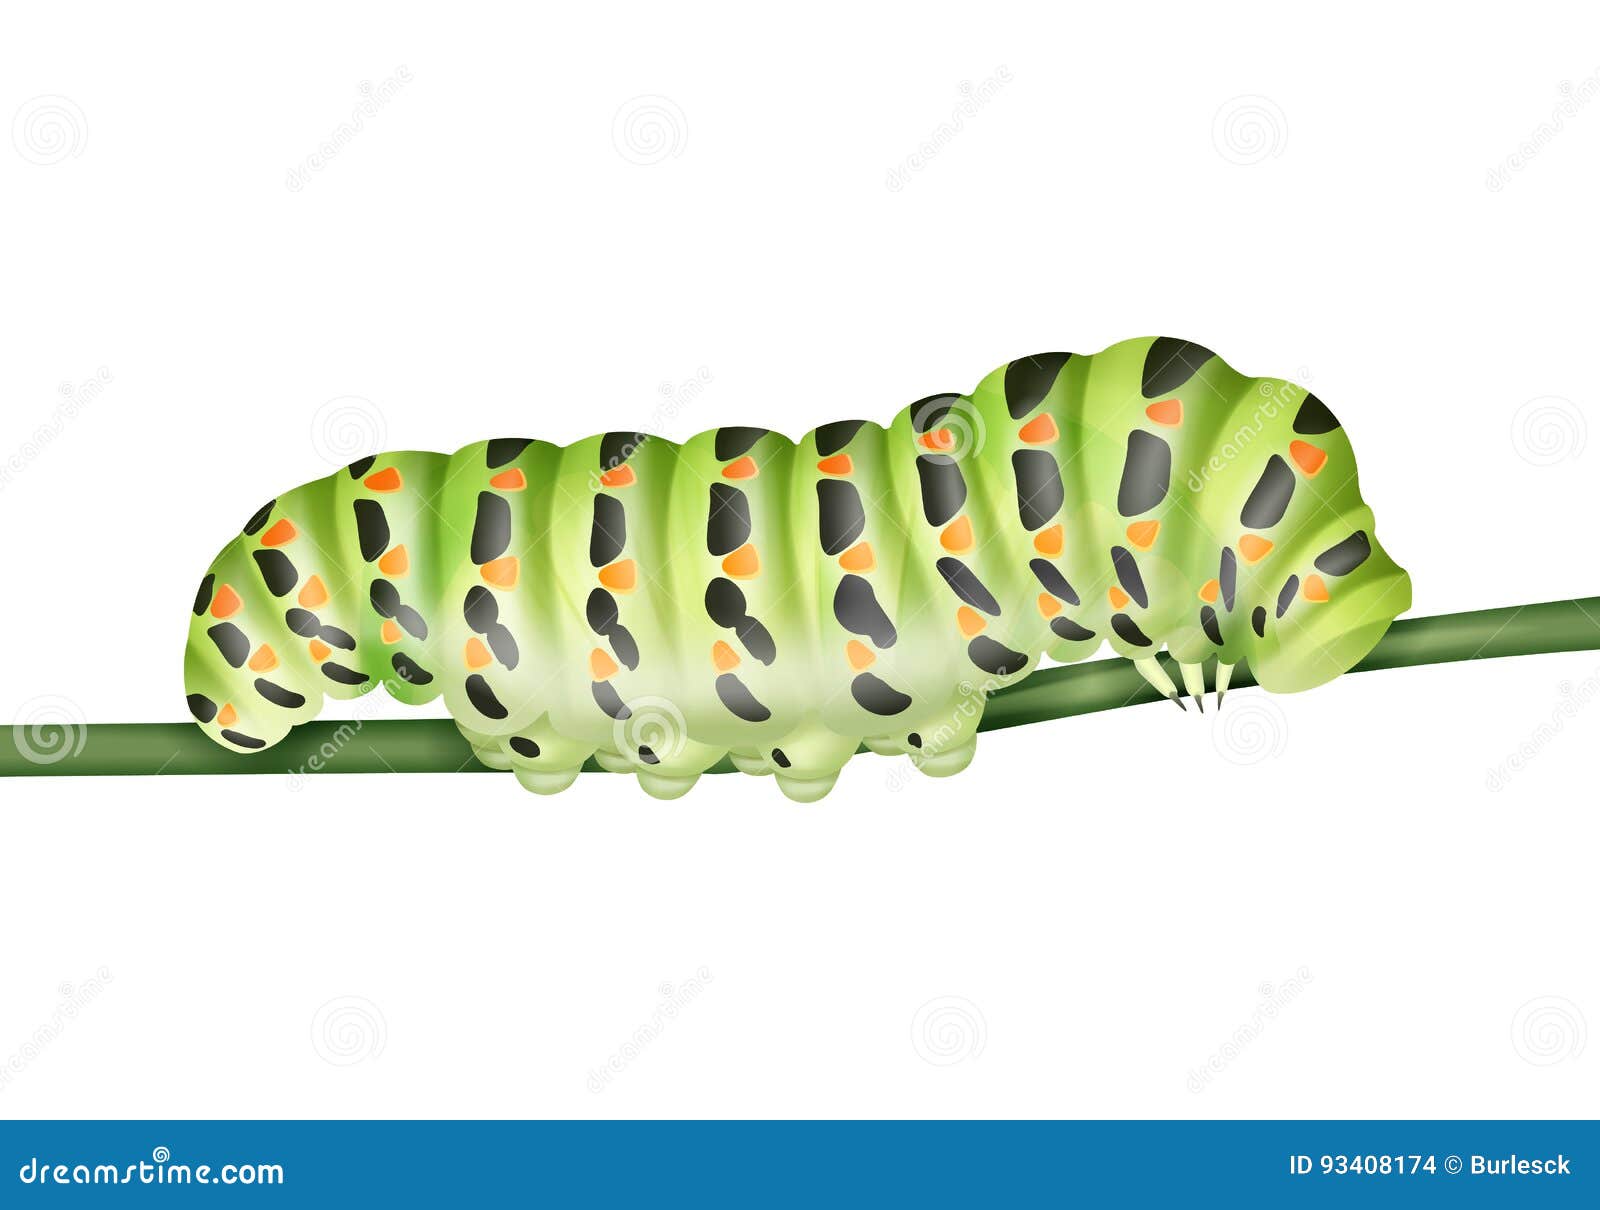 green machaon caterpillar